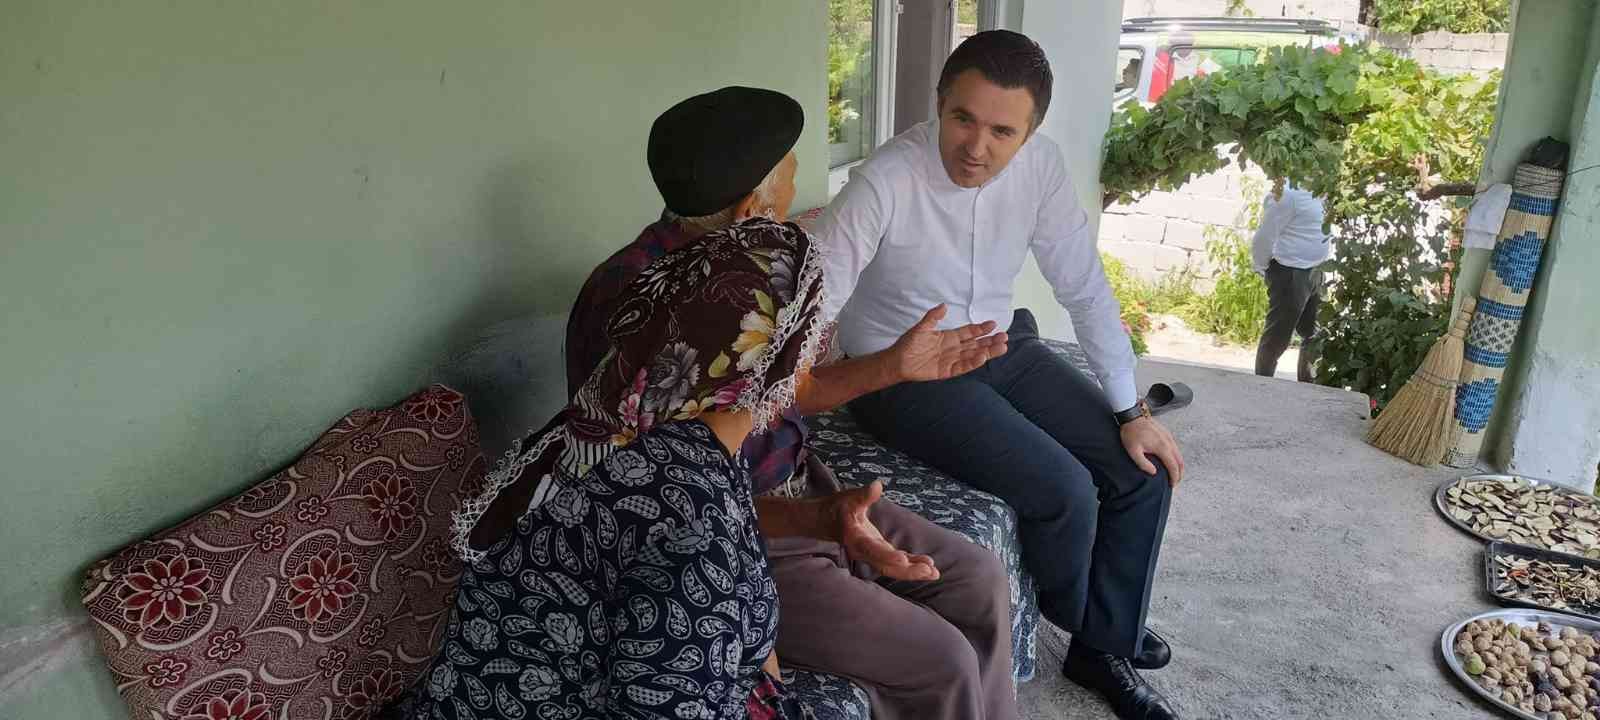 Aydın Aile ve Sosyal Hizmetler İl Müdürü Turan saha çalışmalarını sürdürüyor